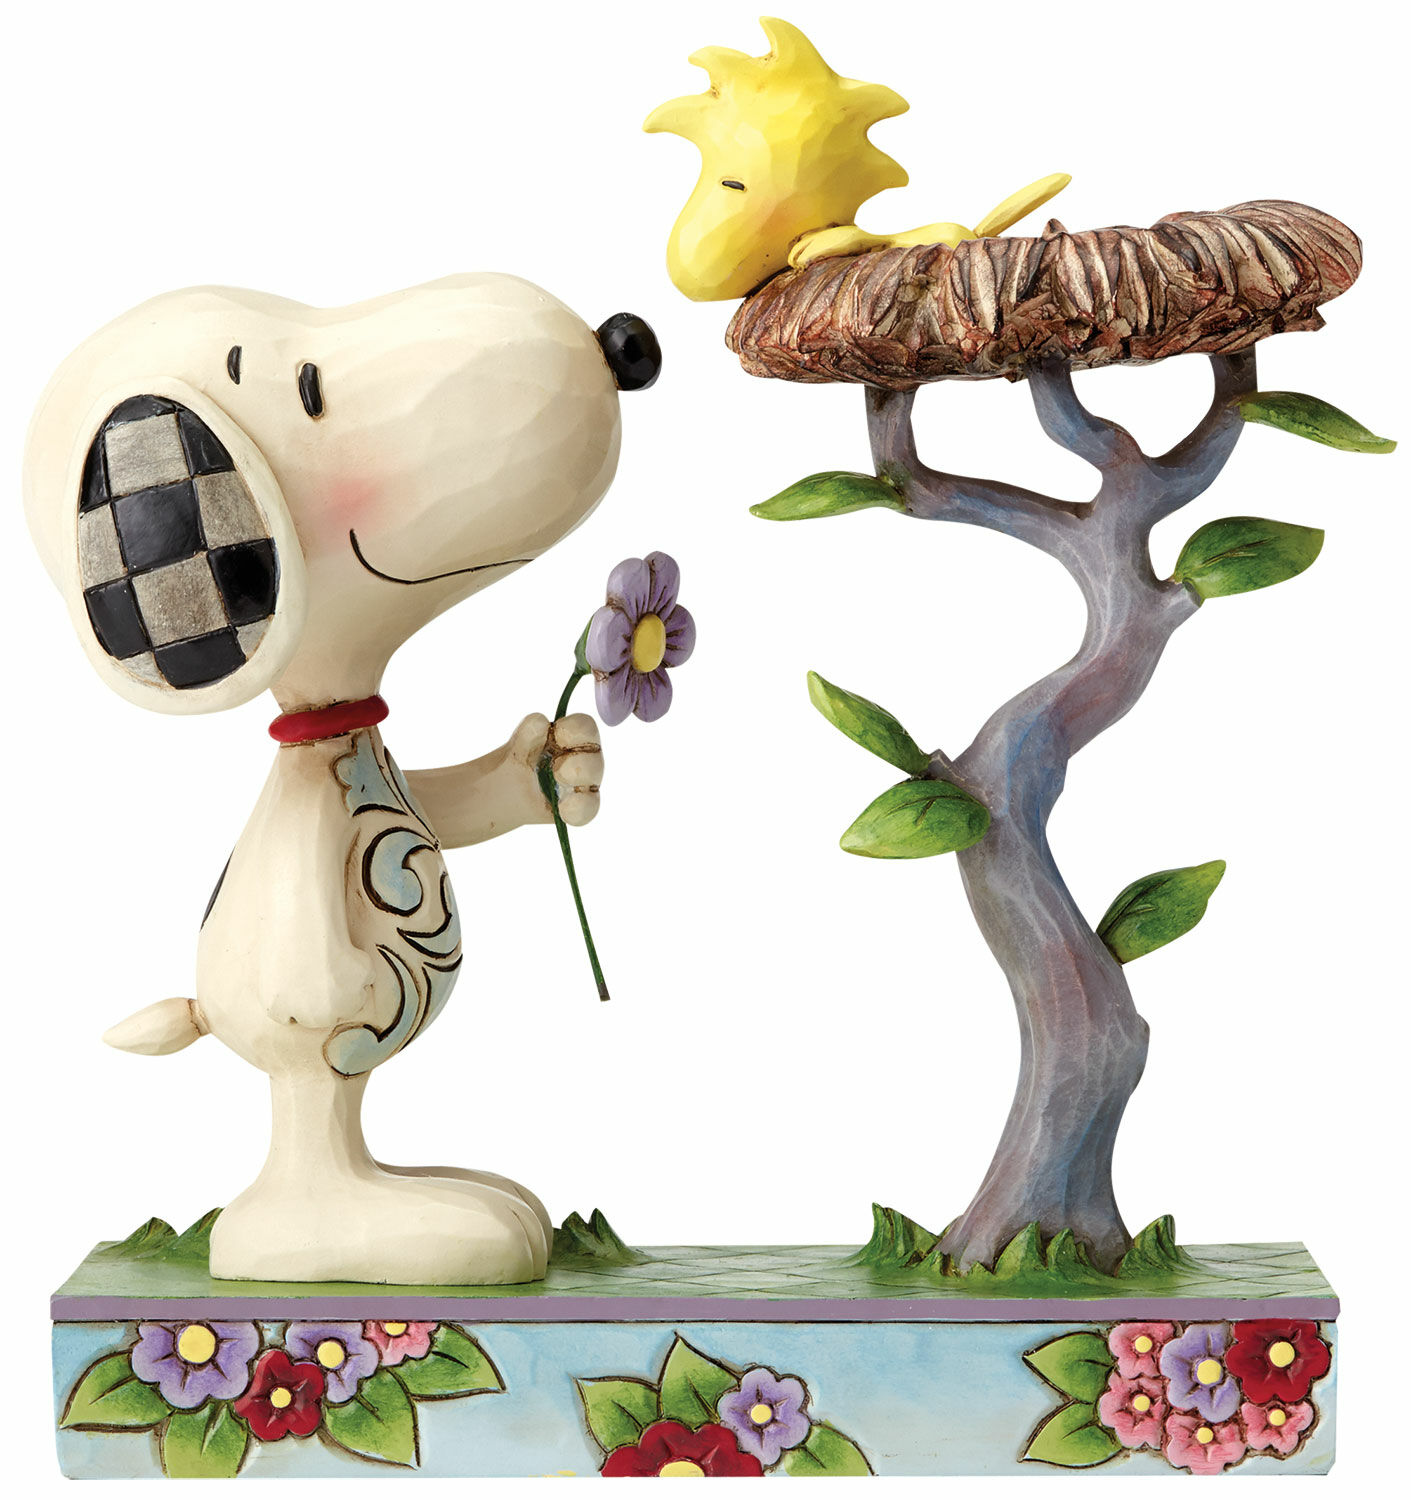 Sculptuur "Snoopy en Woodstock in het Nest", gegoten von Jim Shore